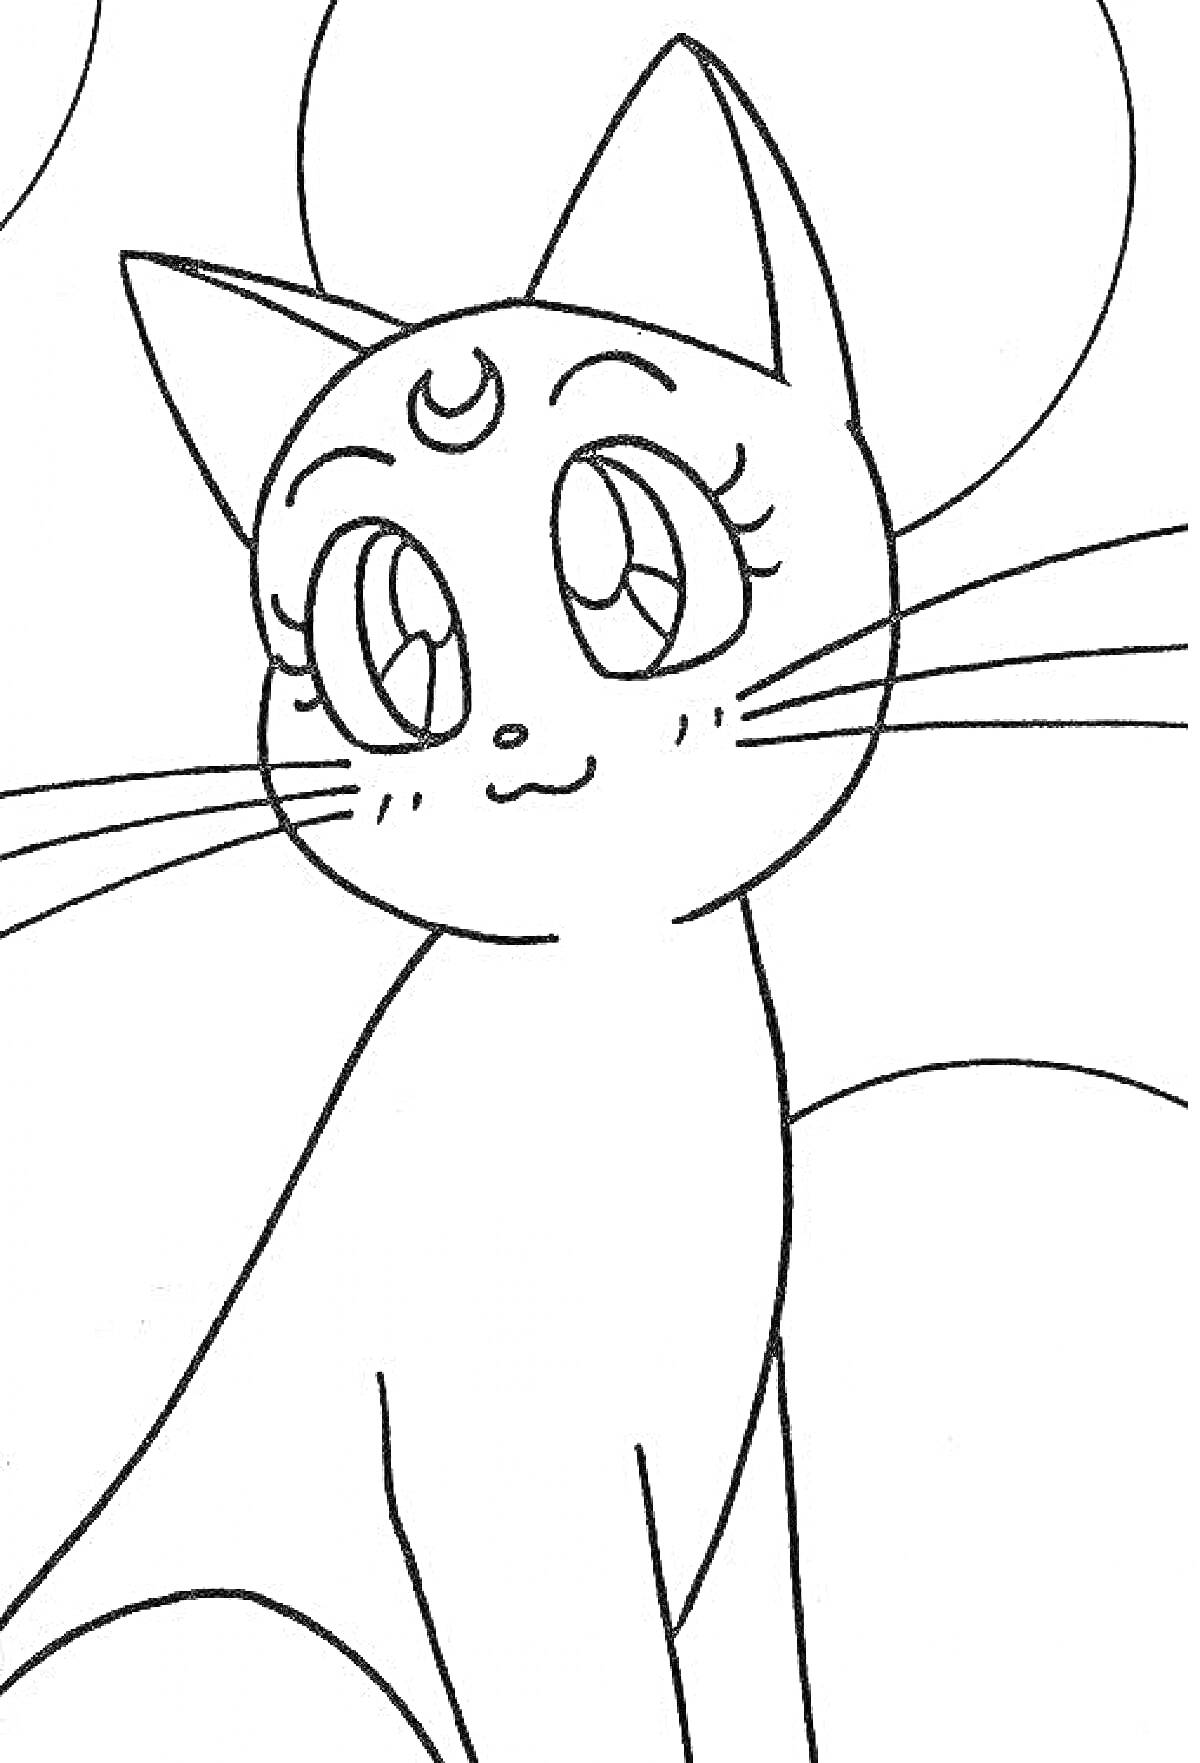 Раскраска Аниме кот с символом луны на лбу, крупные глаза, длинные усы, фоны в виде круга